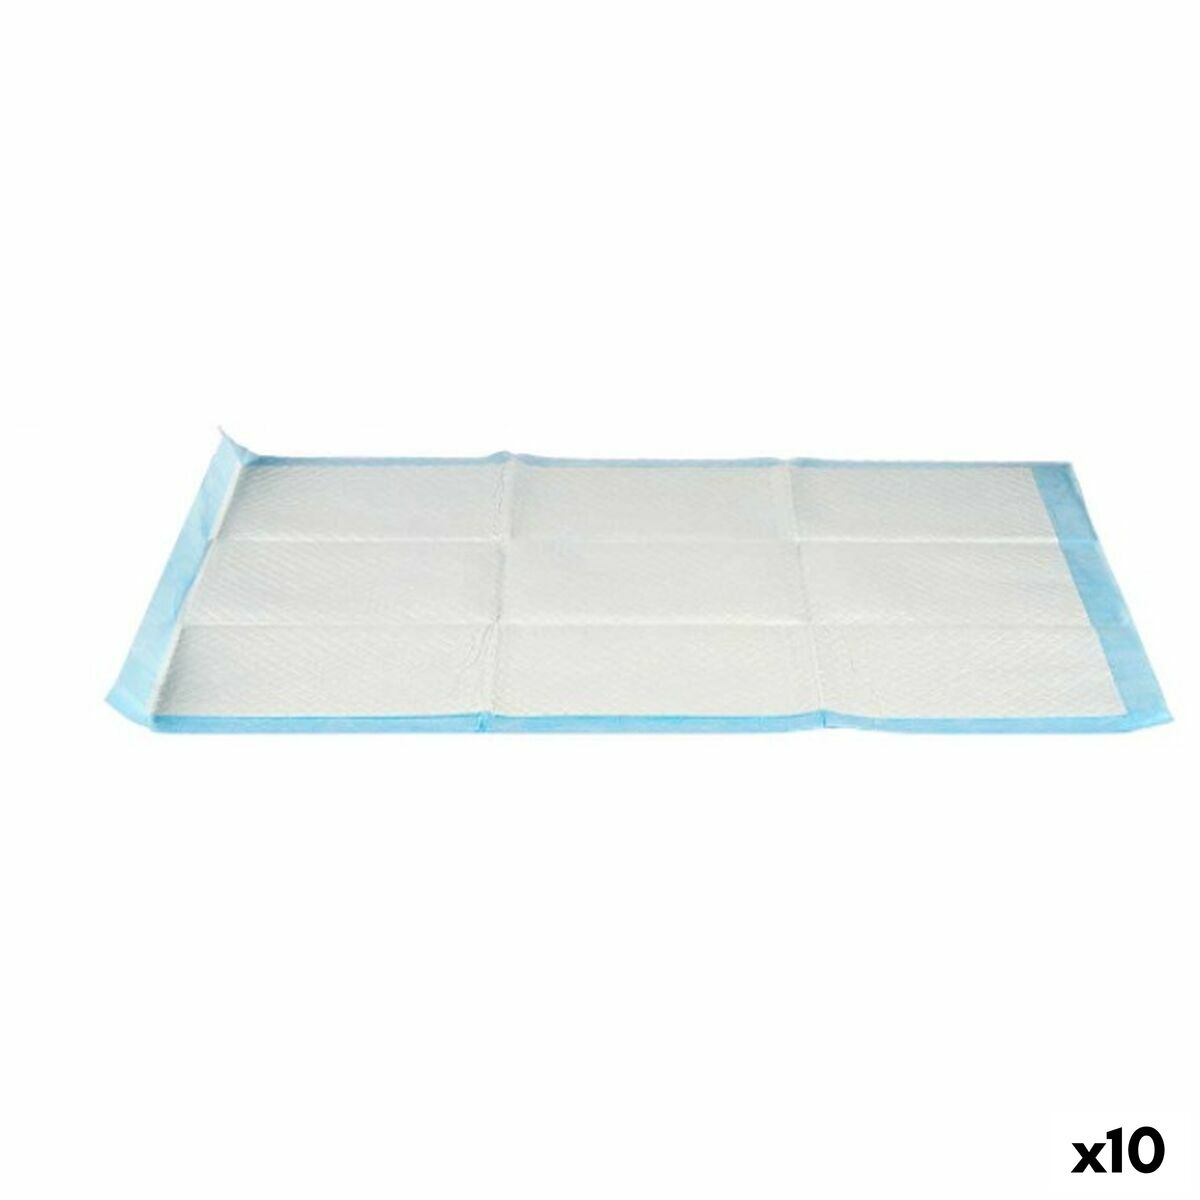 Zindelijkheidstraining-pads voor honden 60 x 90 cm Blauw Wit Papier Polyethyleen (10 Stuks)